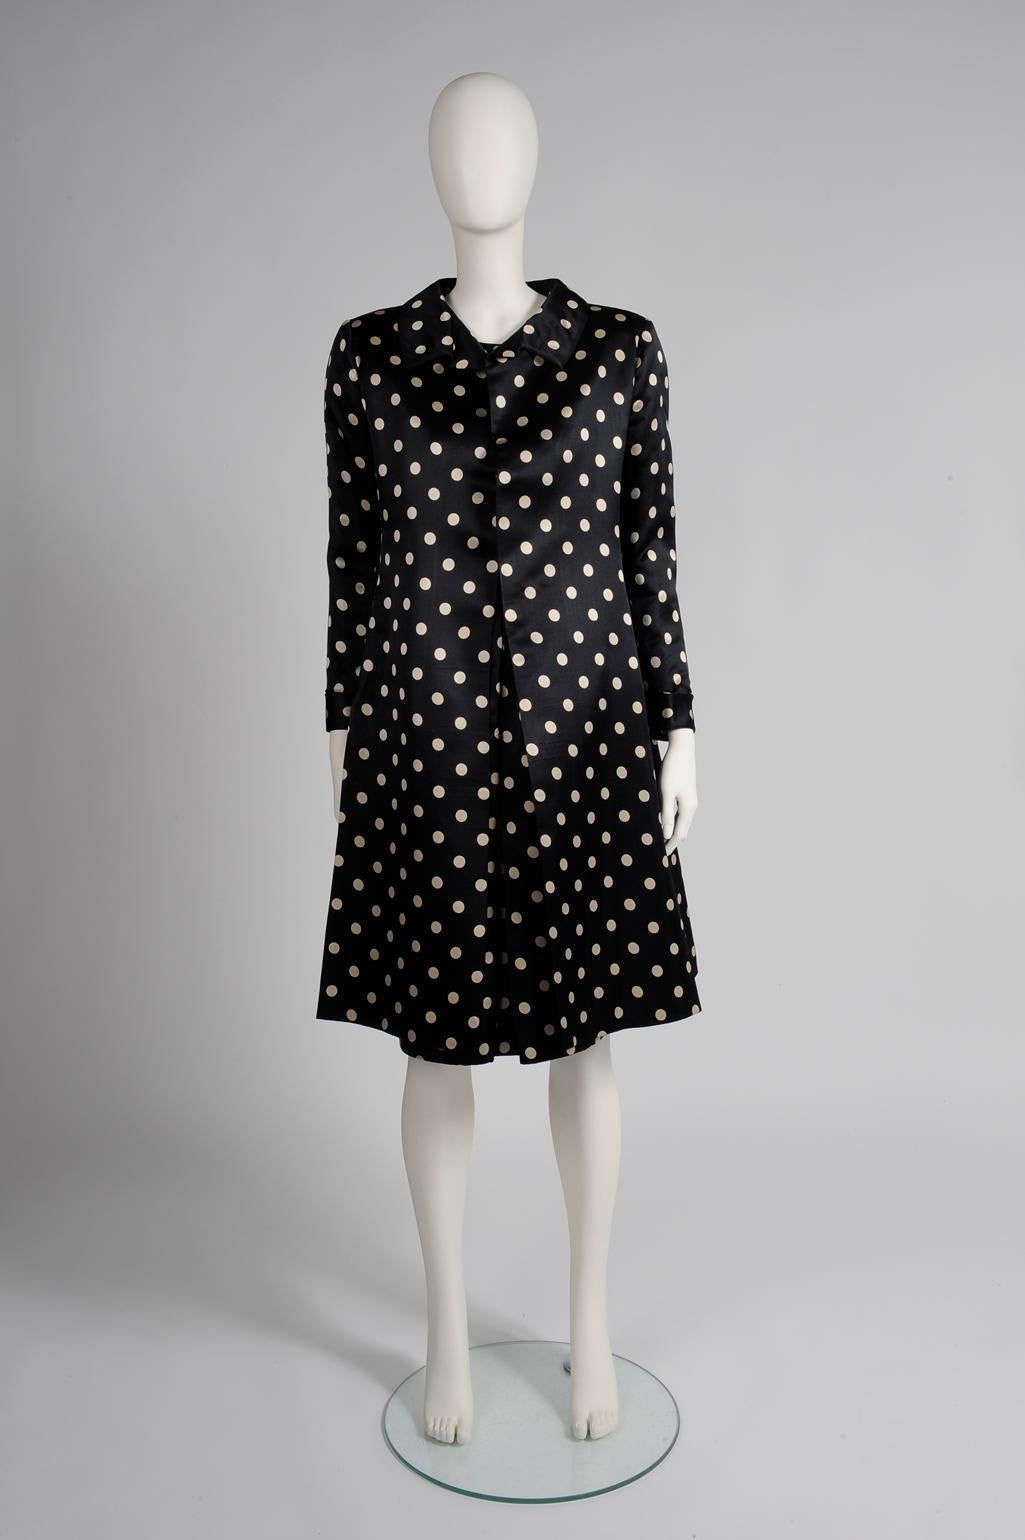 Die Hochzeits season ist da, und dieses Haute-Couture-Set von Nina Ricci aus den frühen 60er Jahren ist eine elegante Option für die Zeremonie. Aus raffinierter satinierter Seide gedruckt mit kontrastierenden cremefarbenen Tupfen auf schwarzem